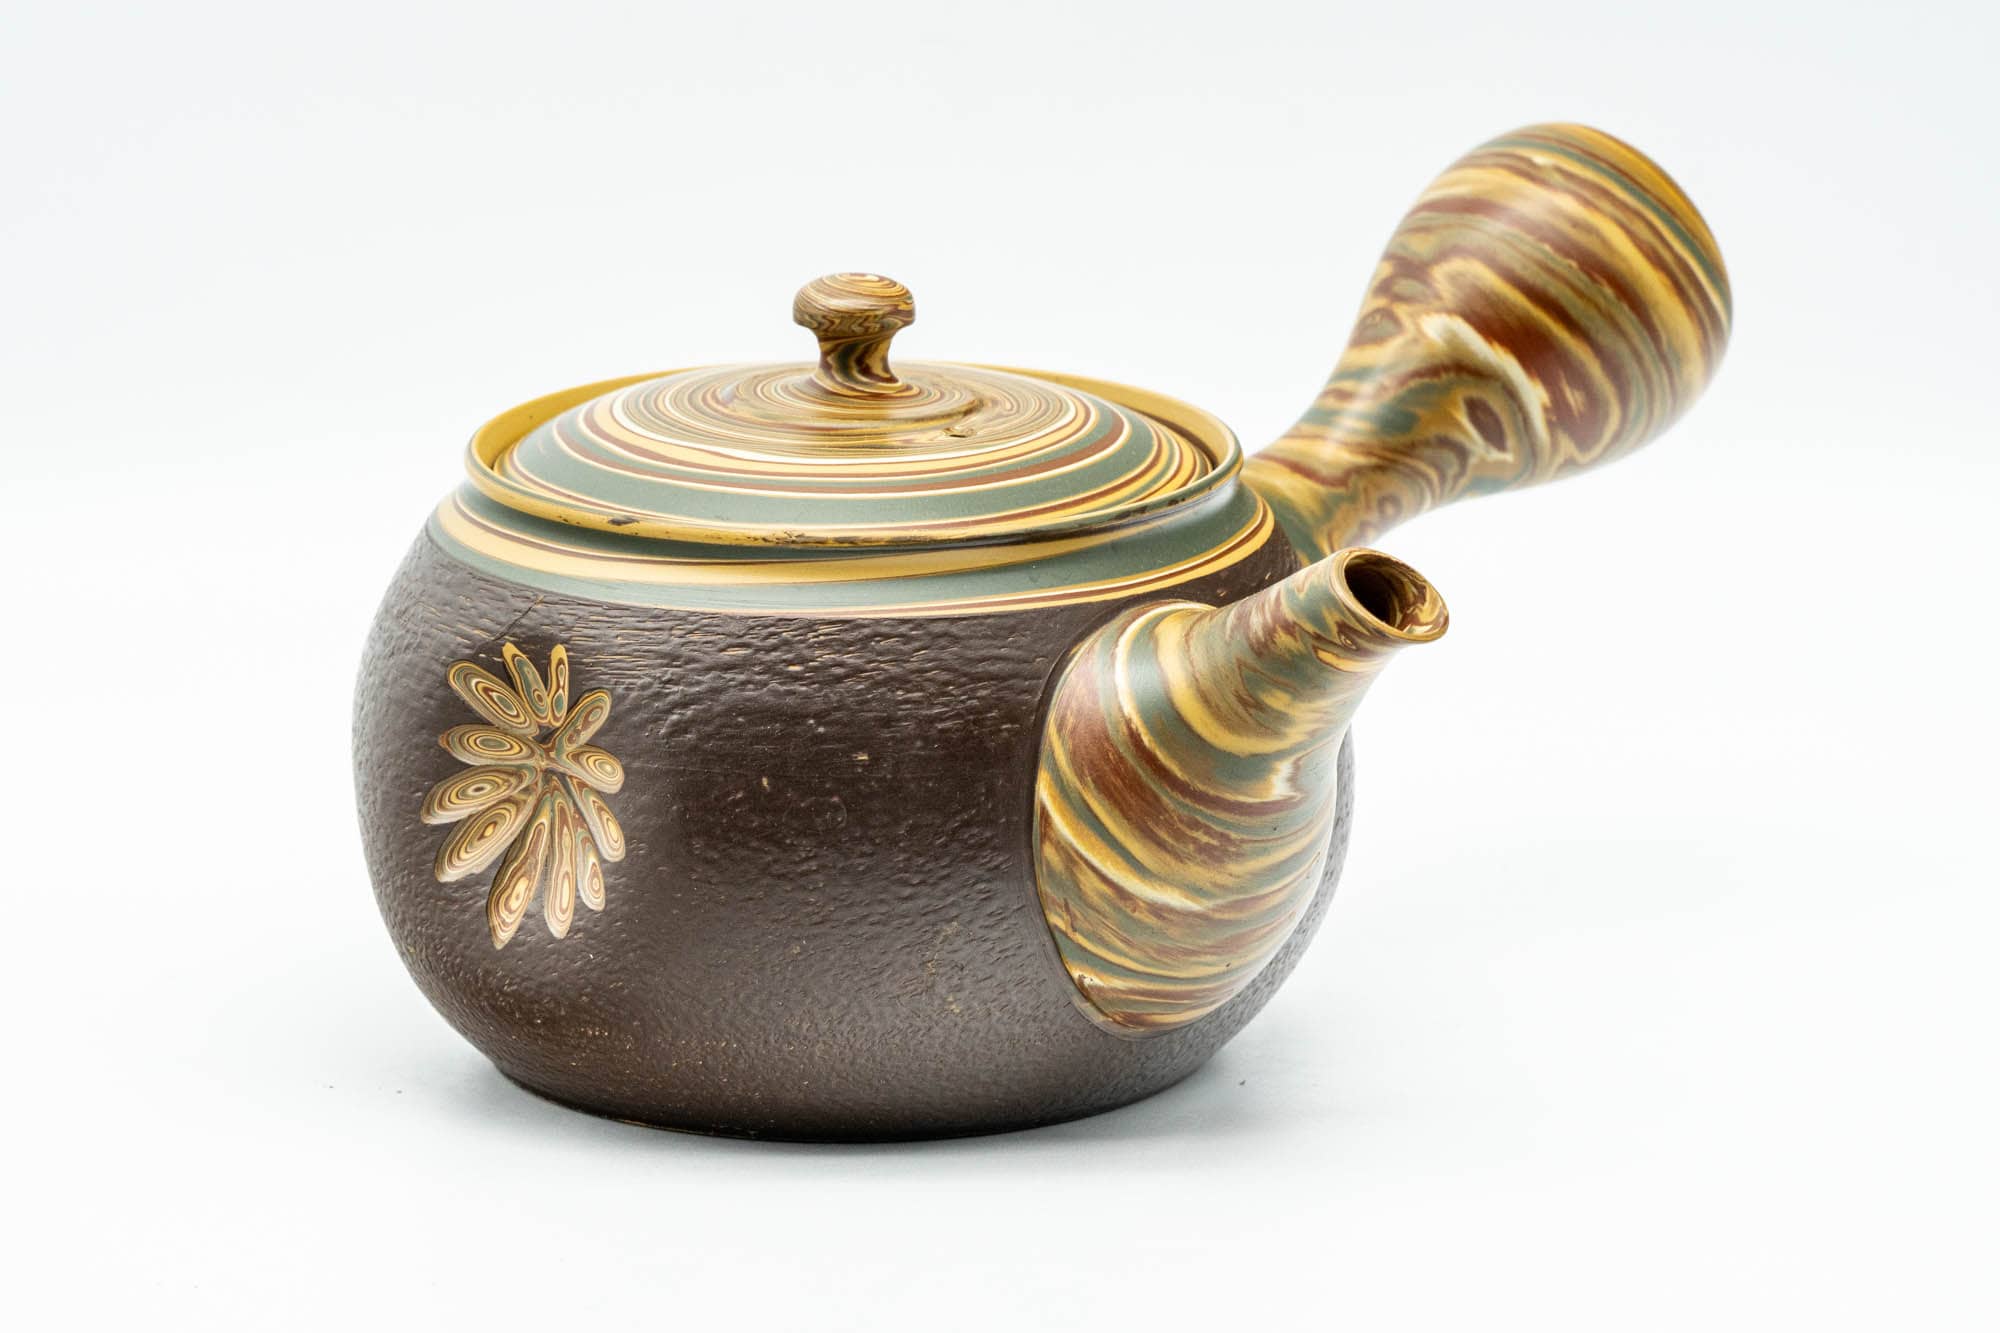 Japanese Kyusu - Engraved Floral Nerikomi Textured Tokoname-yaki Debeso Teapot - 240ml - Tezumi